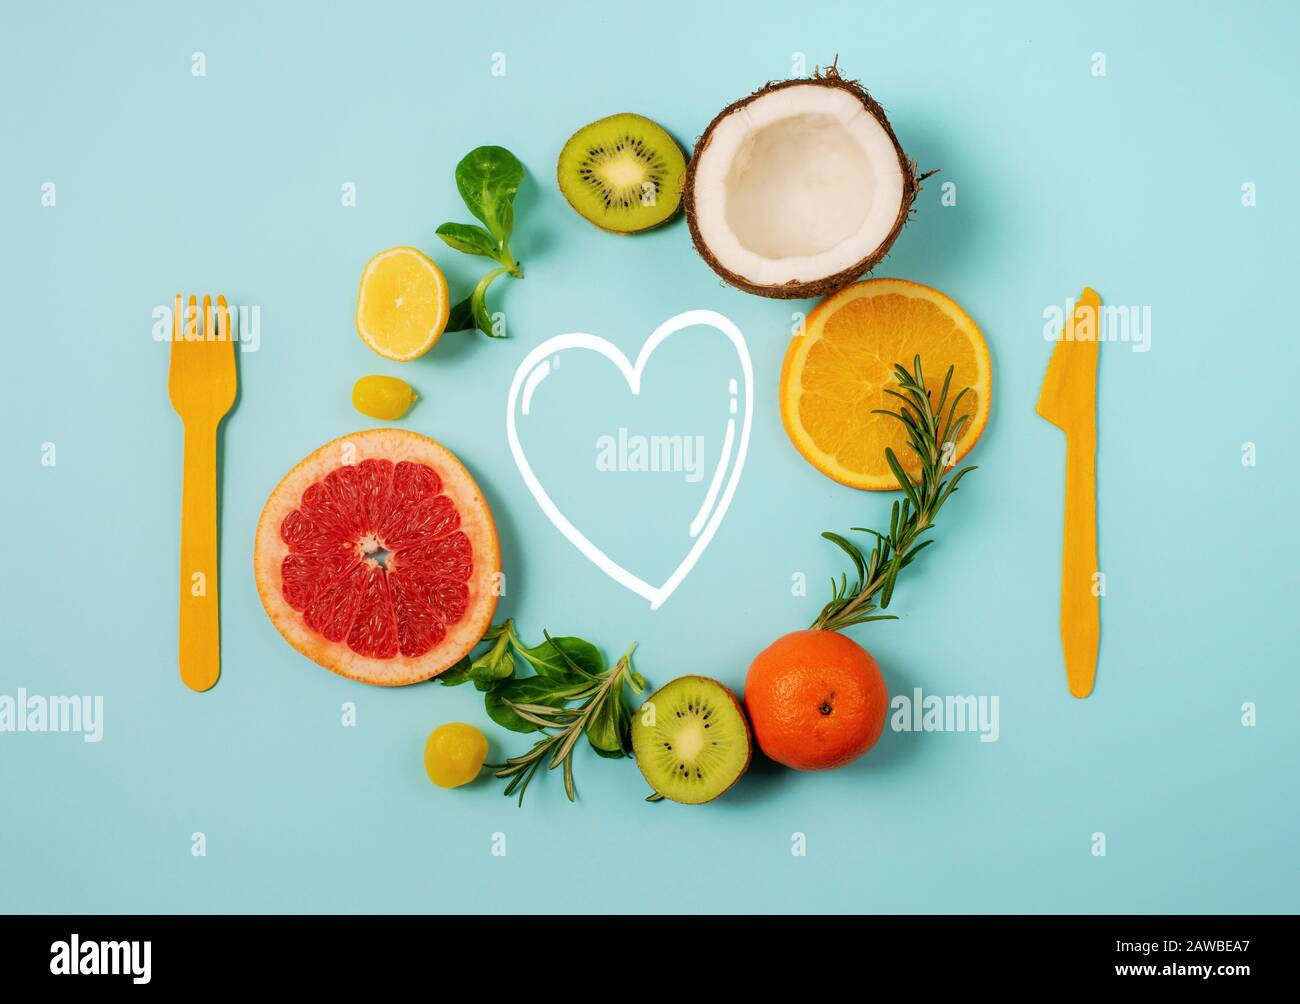 Zusammensetzung von Zitrusfrüchten, Orange und Zitrone, Kokosnuss, Kiwi auf zyanischem Hintergrund Stockfoto